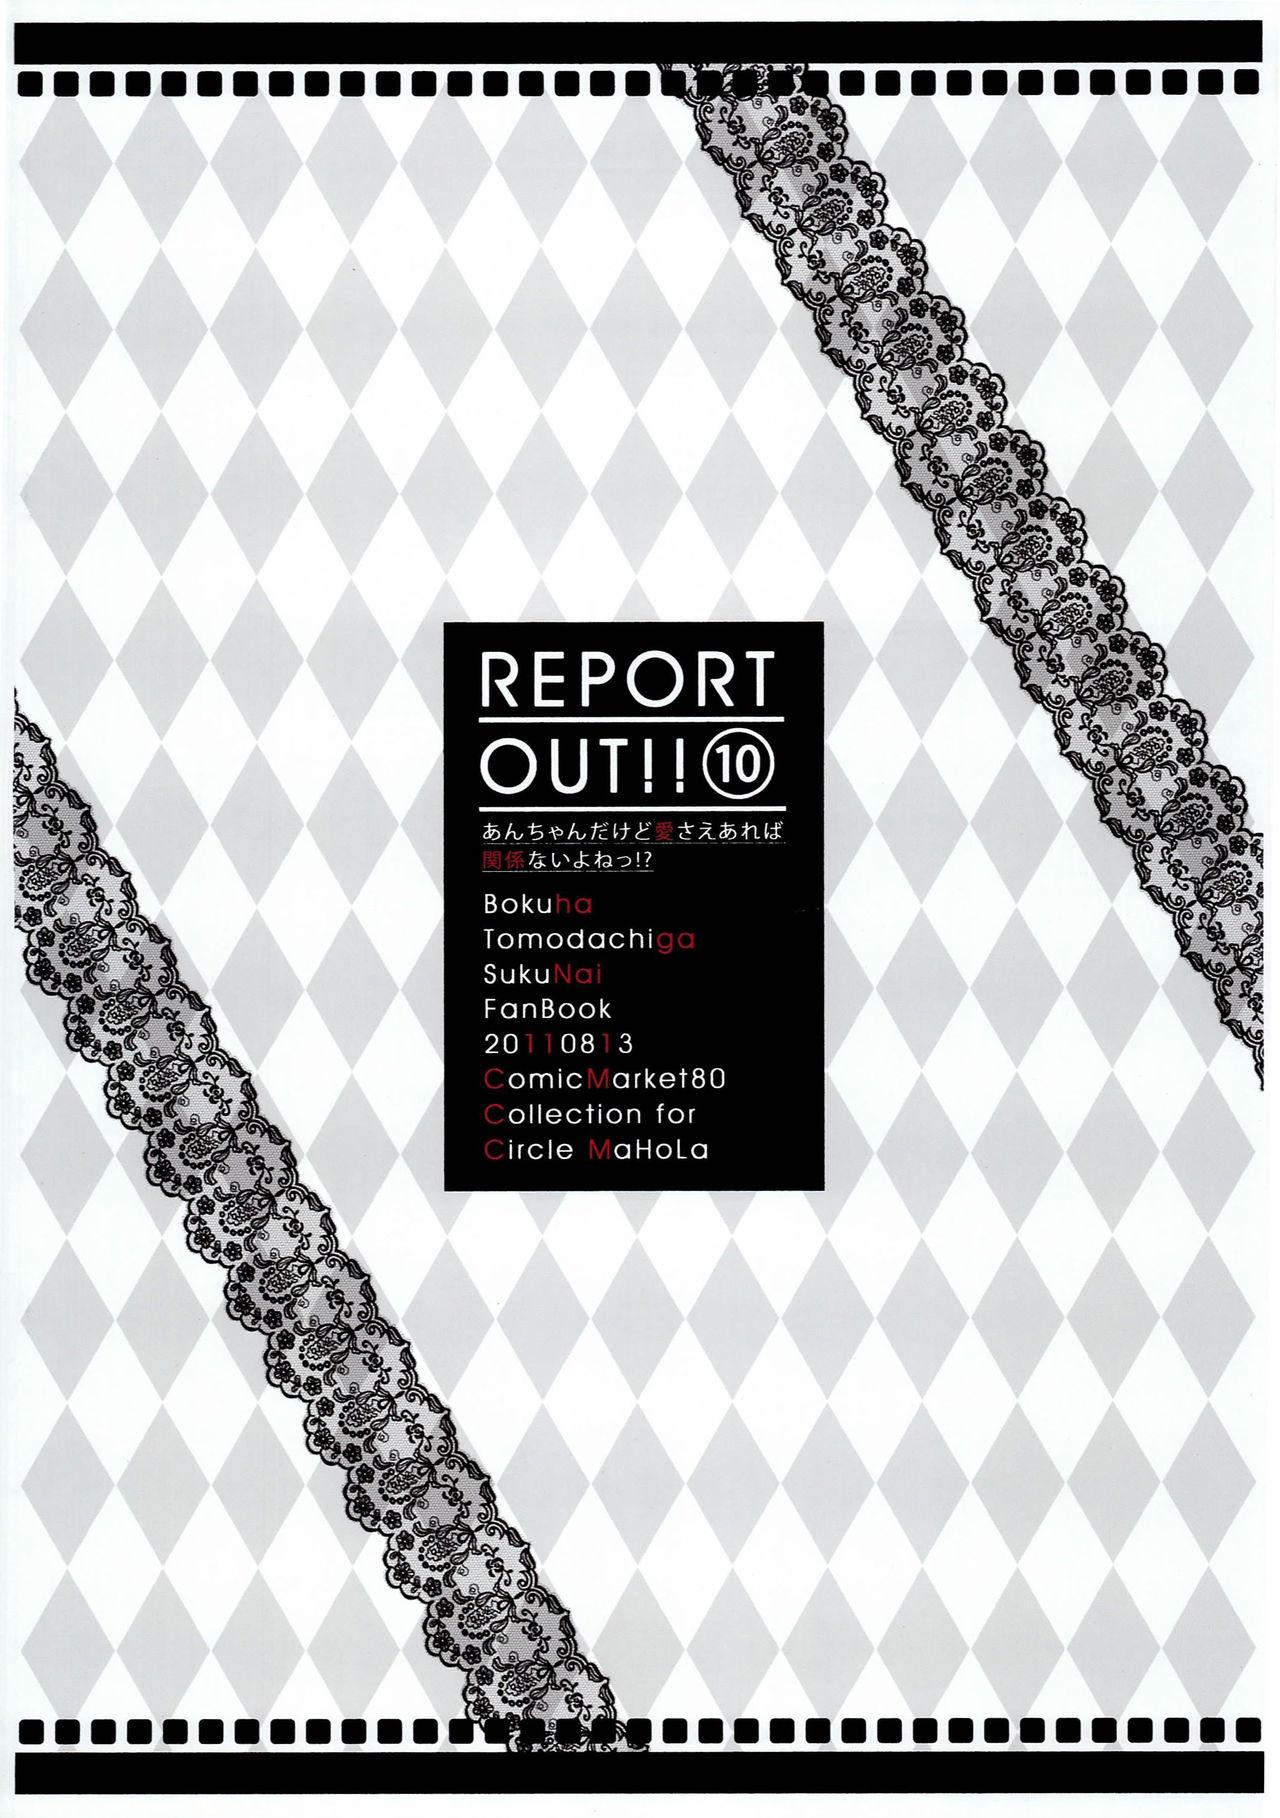 Free REPORT OUT!! Vol. 10 - Boku wa tomodachi ga sukunai Morrita - Page 10